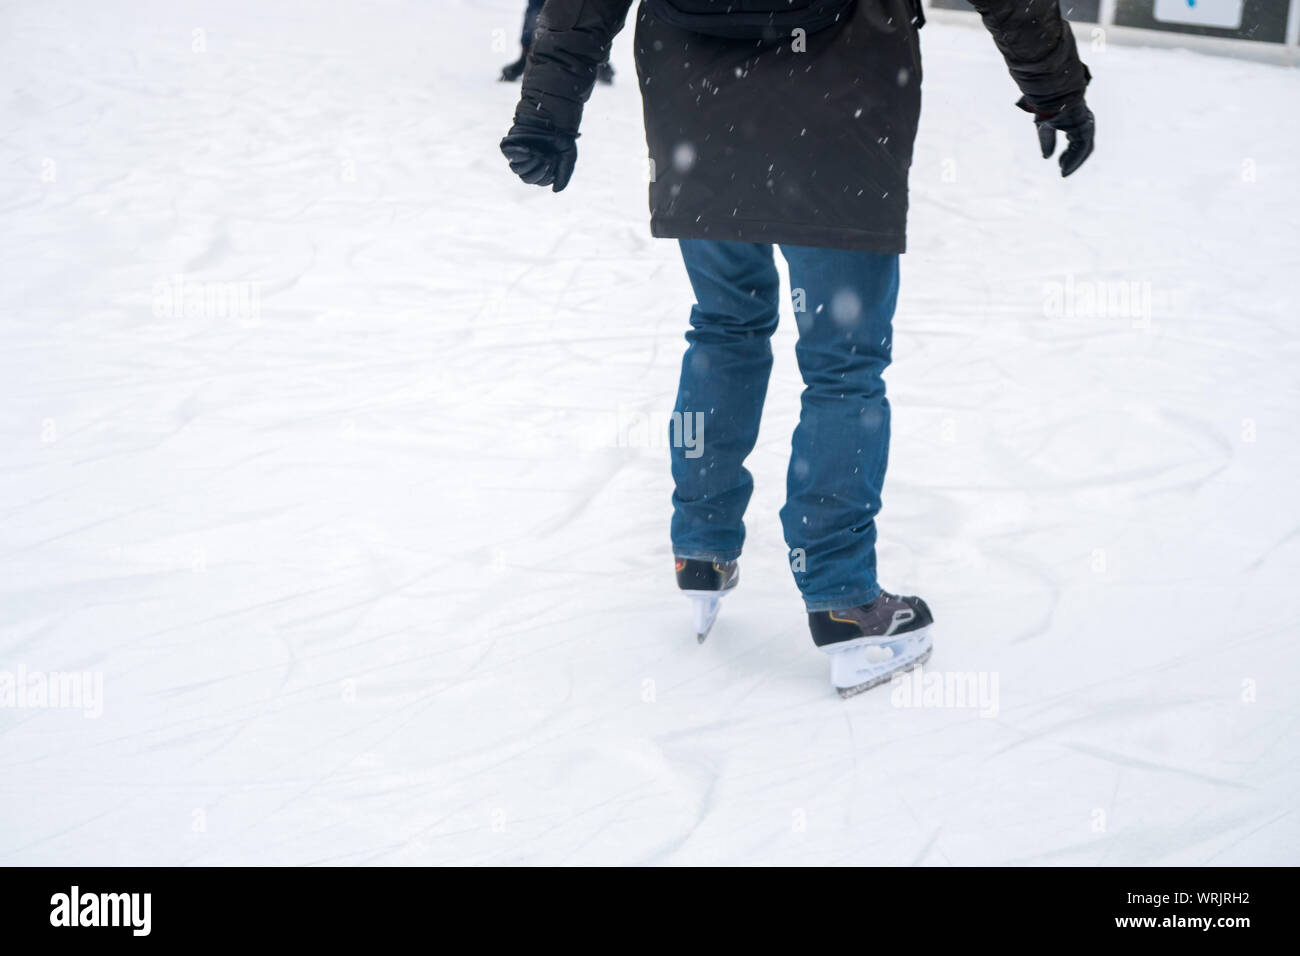 Detailansicht von Schlittschuhen auf der Eisbahn für Bewohner. Eislaufen im Winter. Unterhaltung. Stockfoto